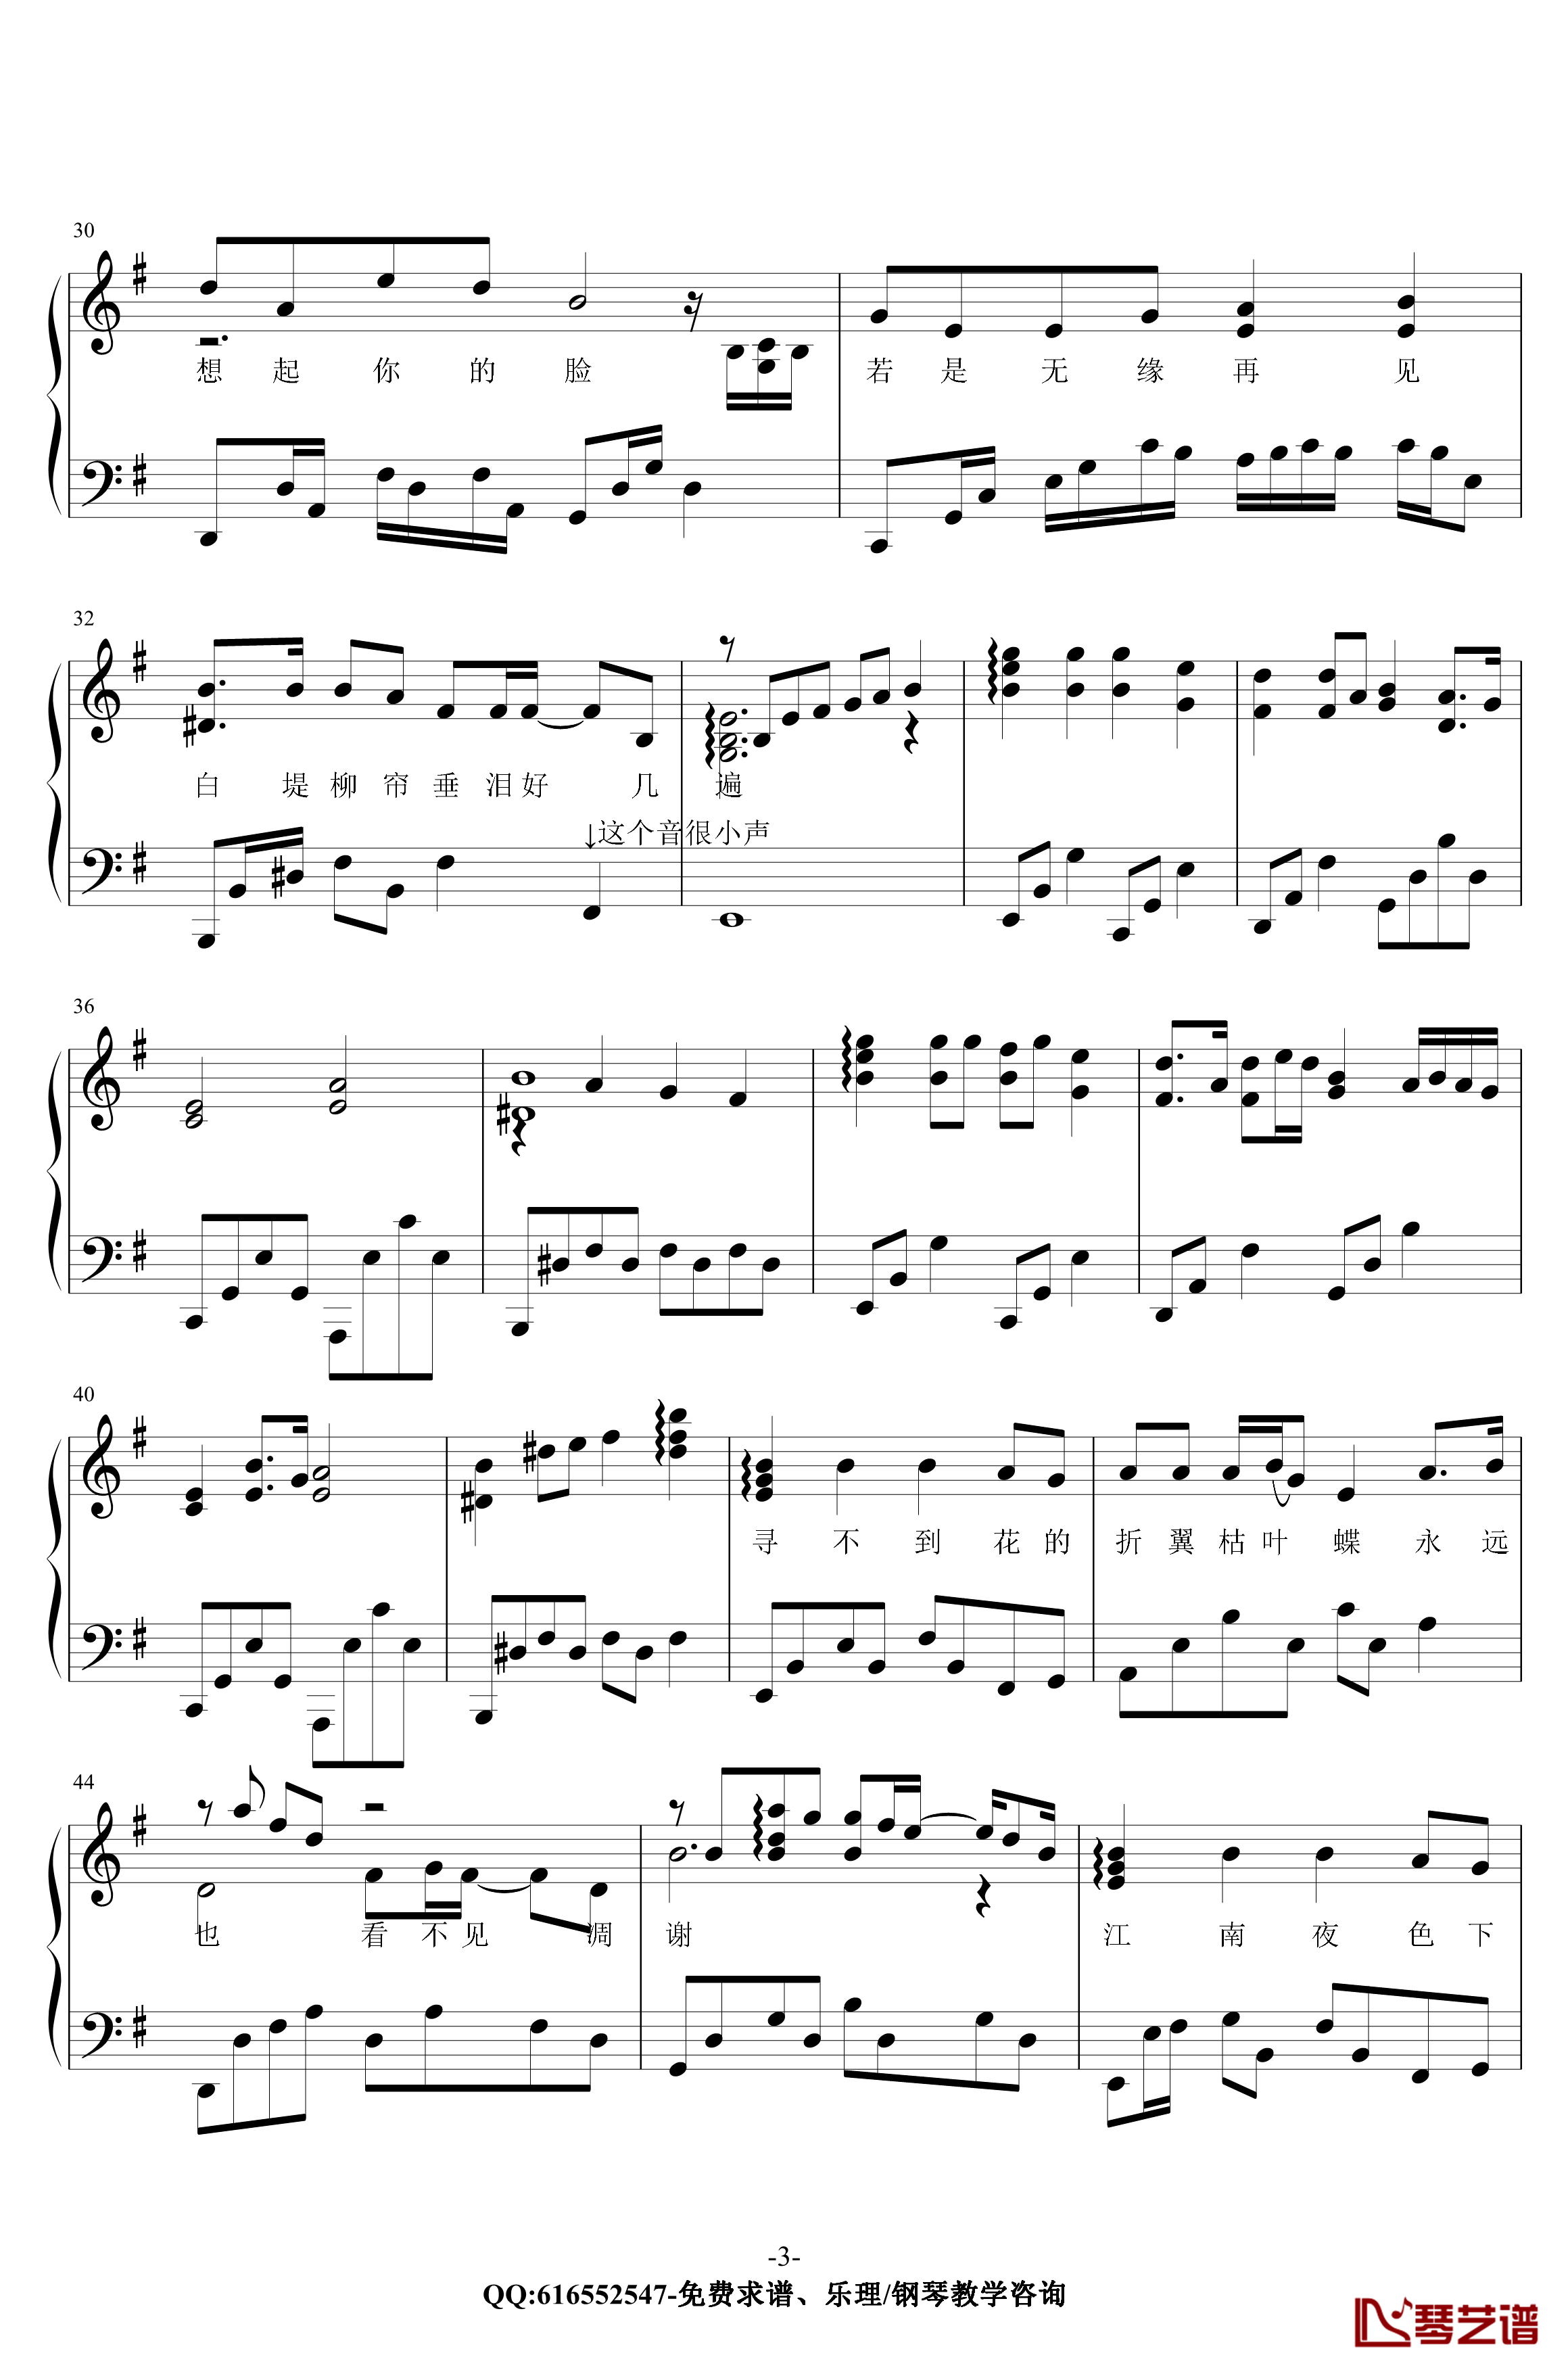 断桥残雪钢琴谱-金老师原声独奏版180117-许嵩